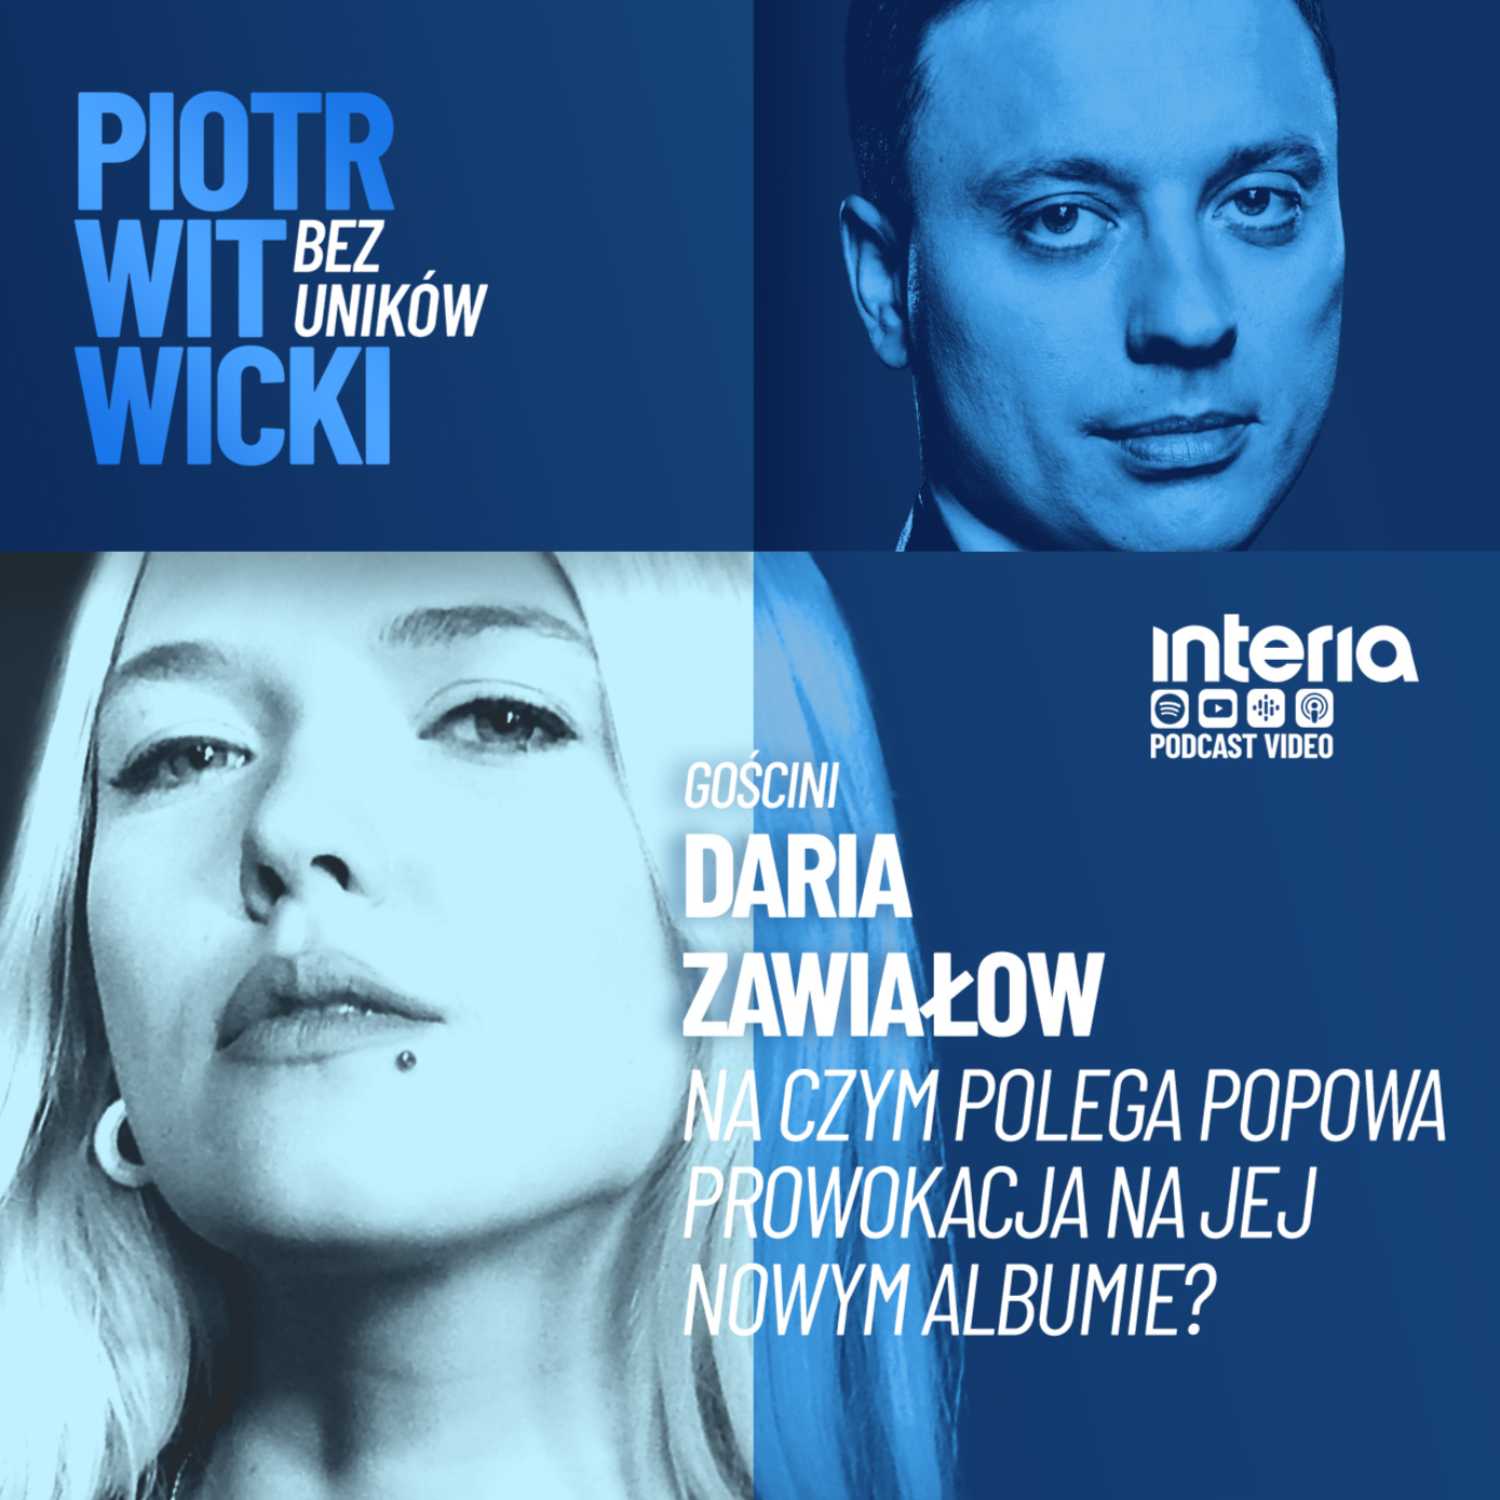 Daria Zawiałow: o początkach kariery i swoim nowym albumie "Dziewczyna pop".